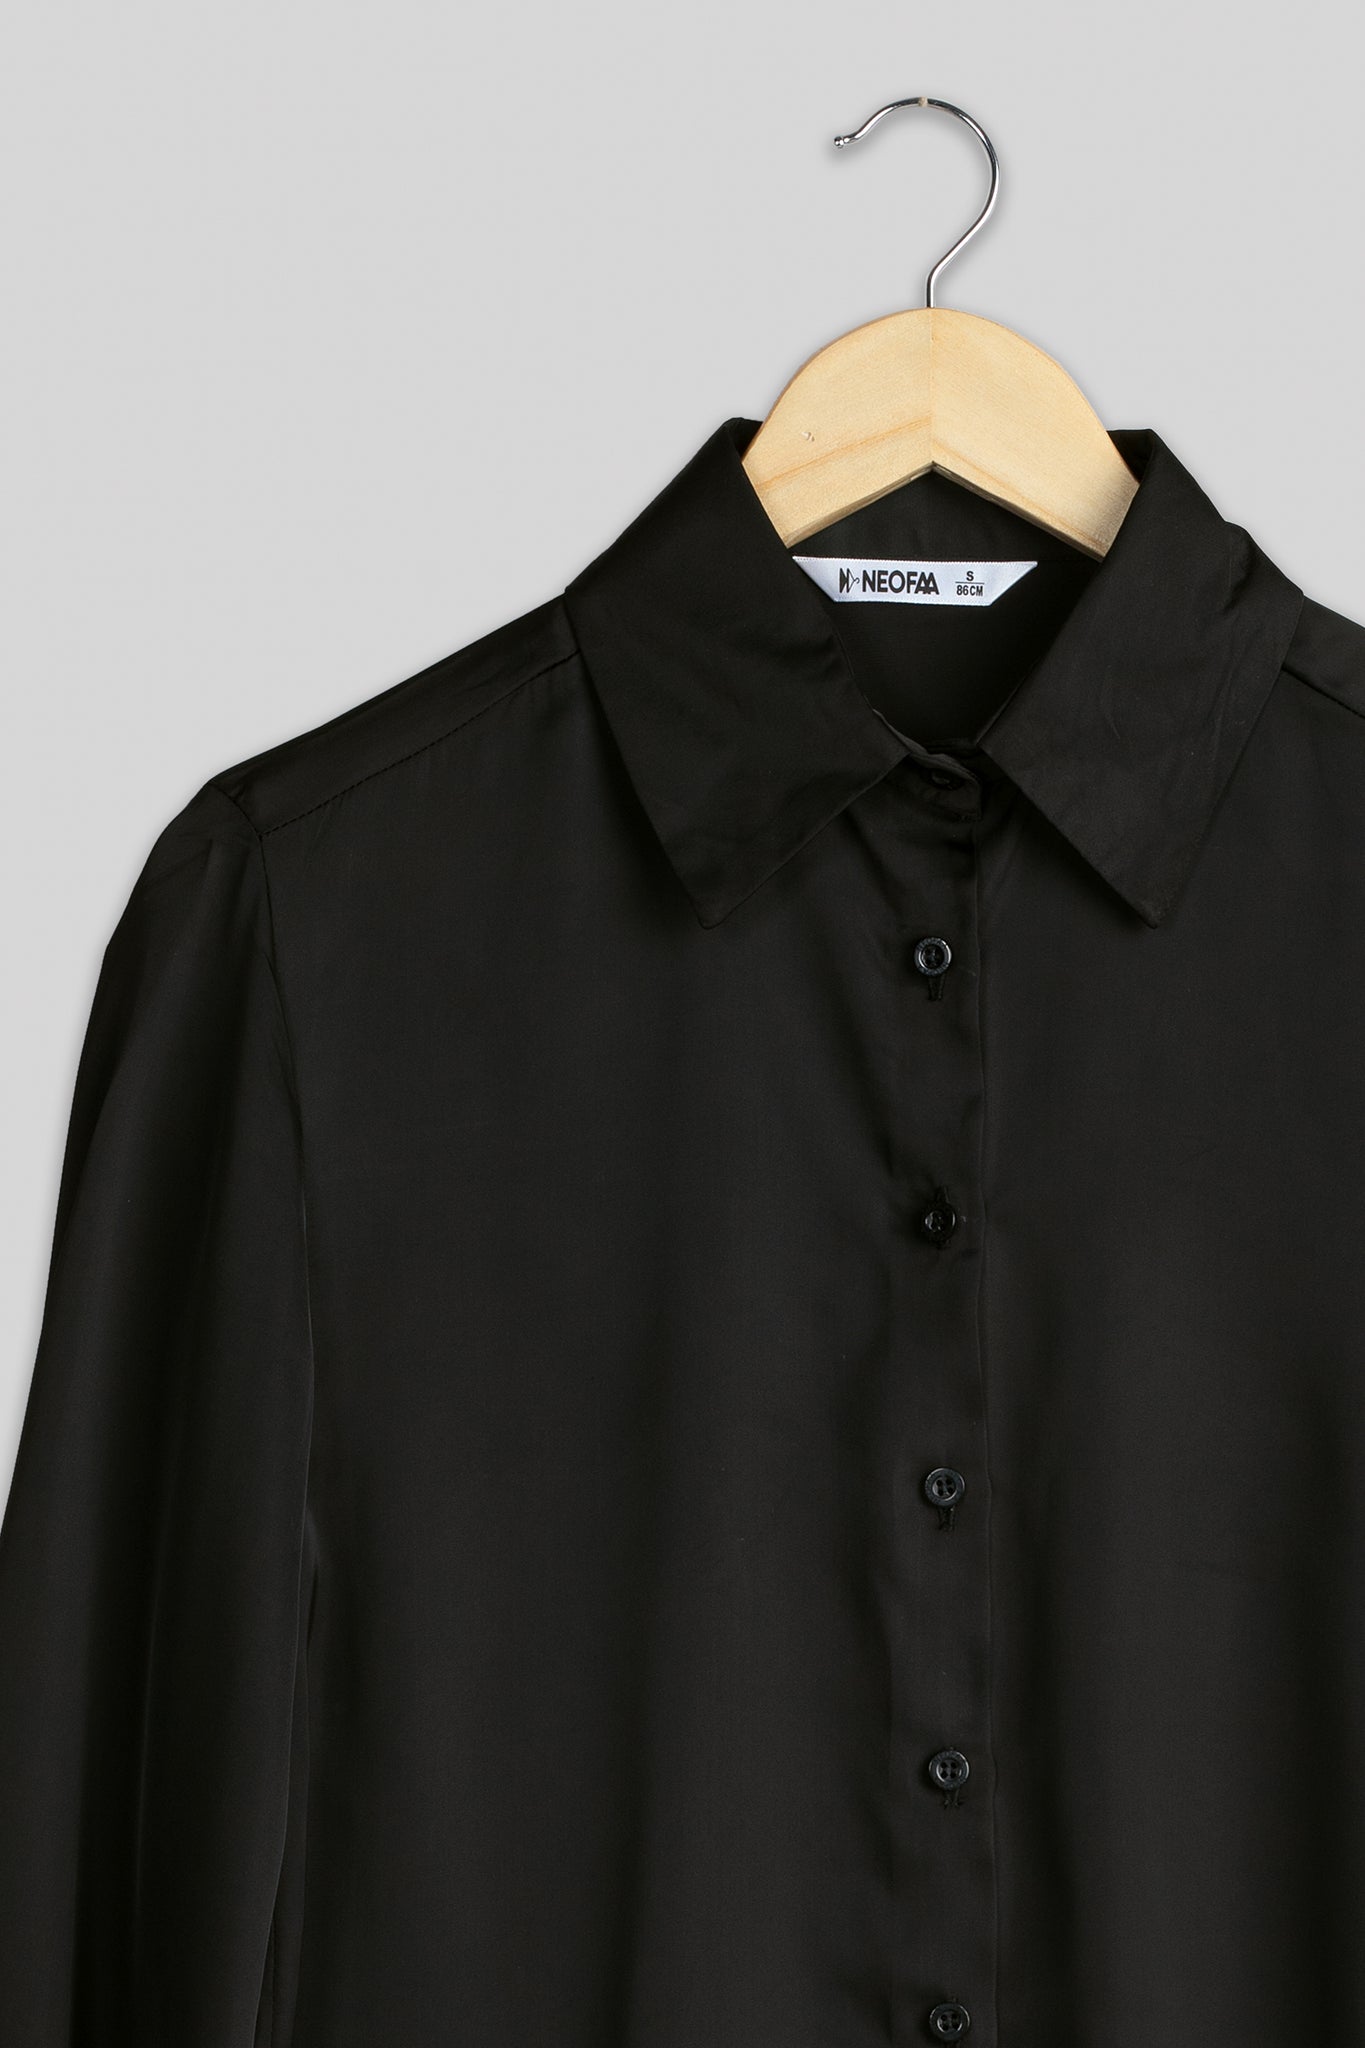 Luxurious Black Bell Sleeve Shirt For Women